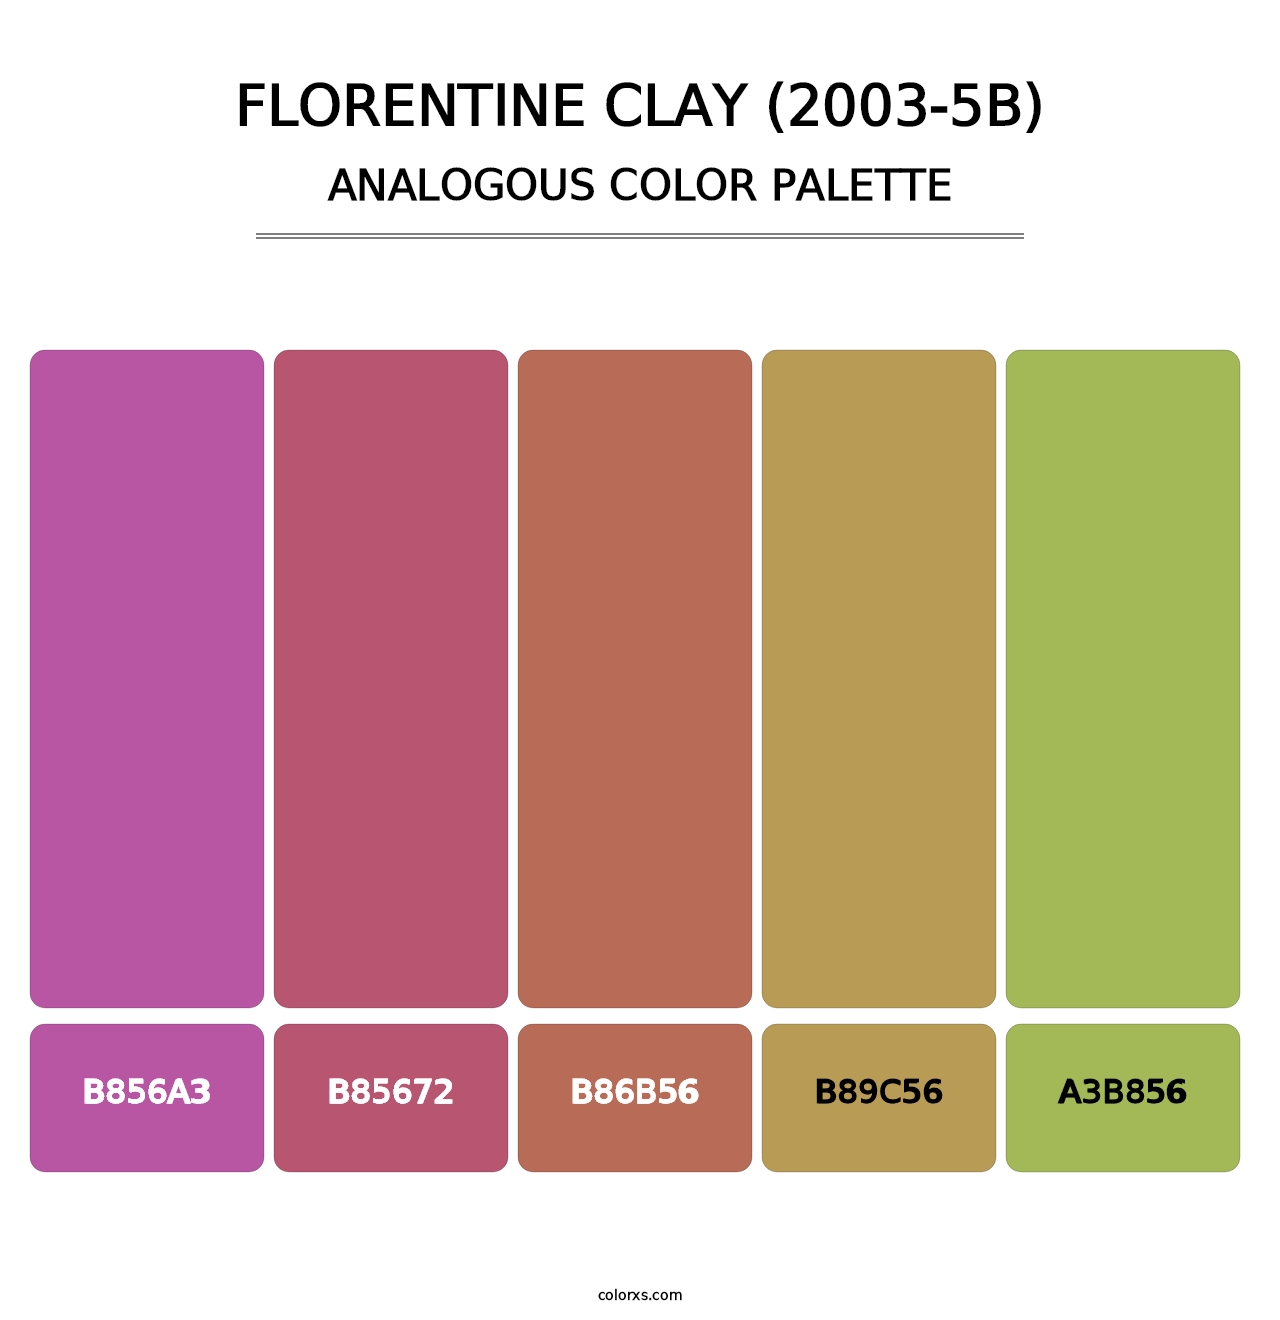 Florentine Clay (2003-5B) - Analogous Color Palette